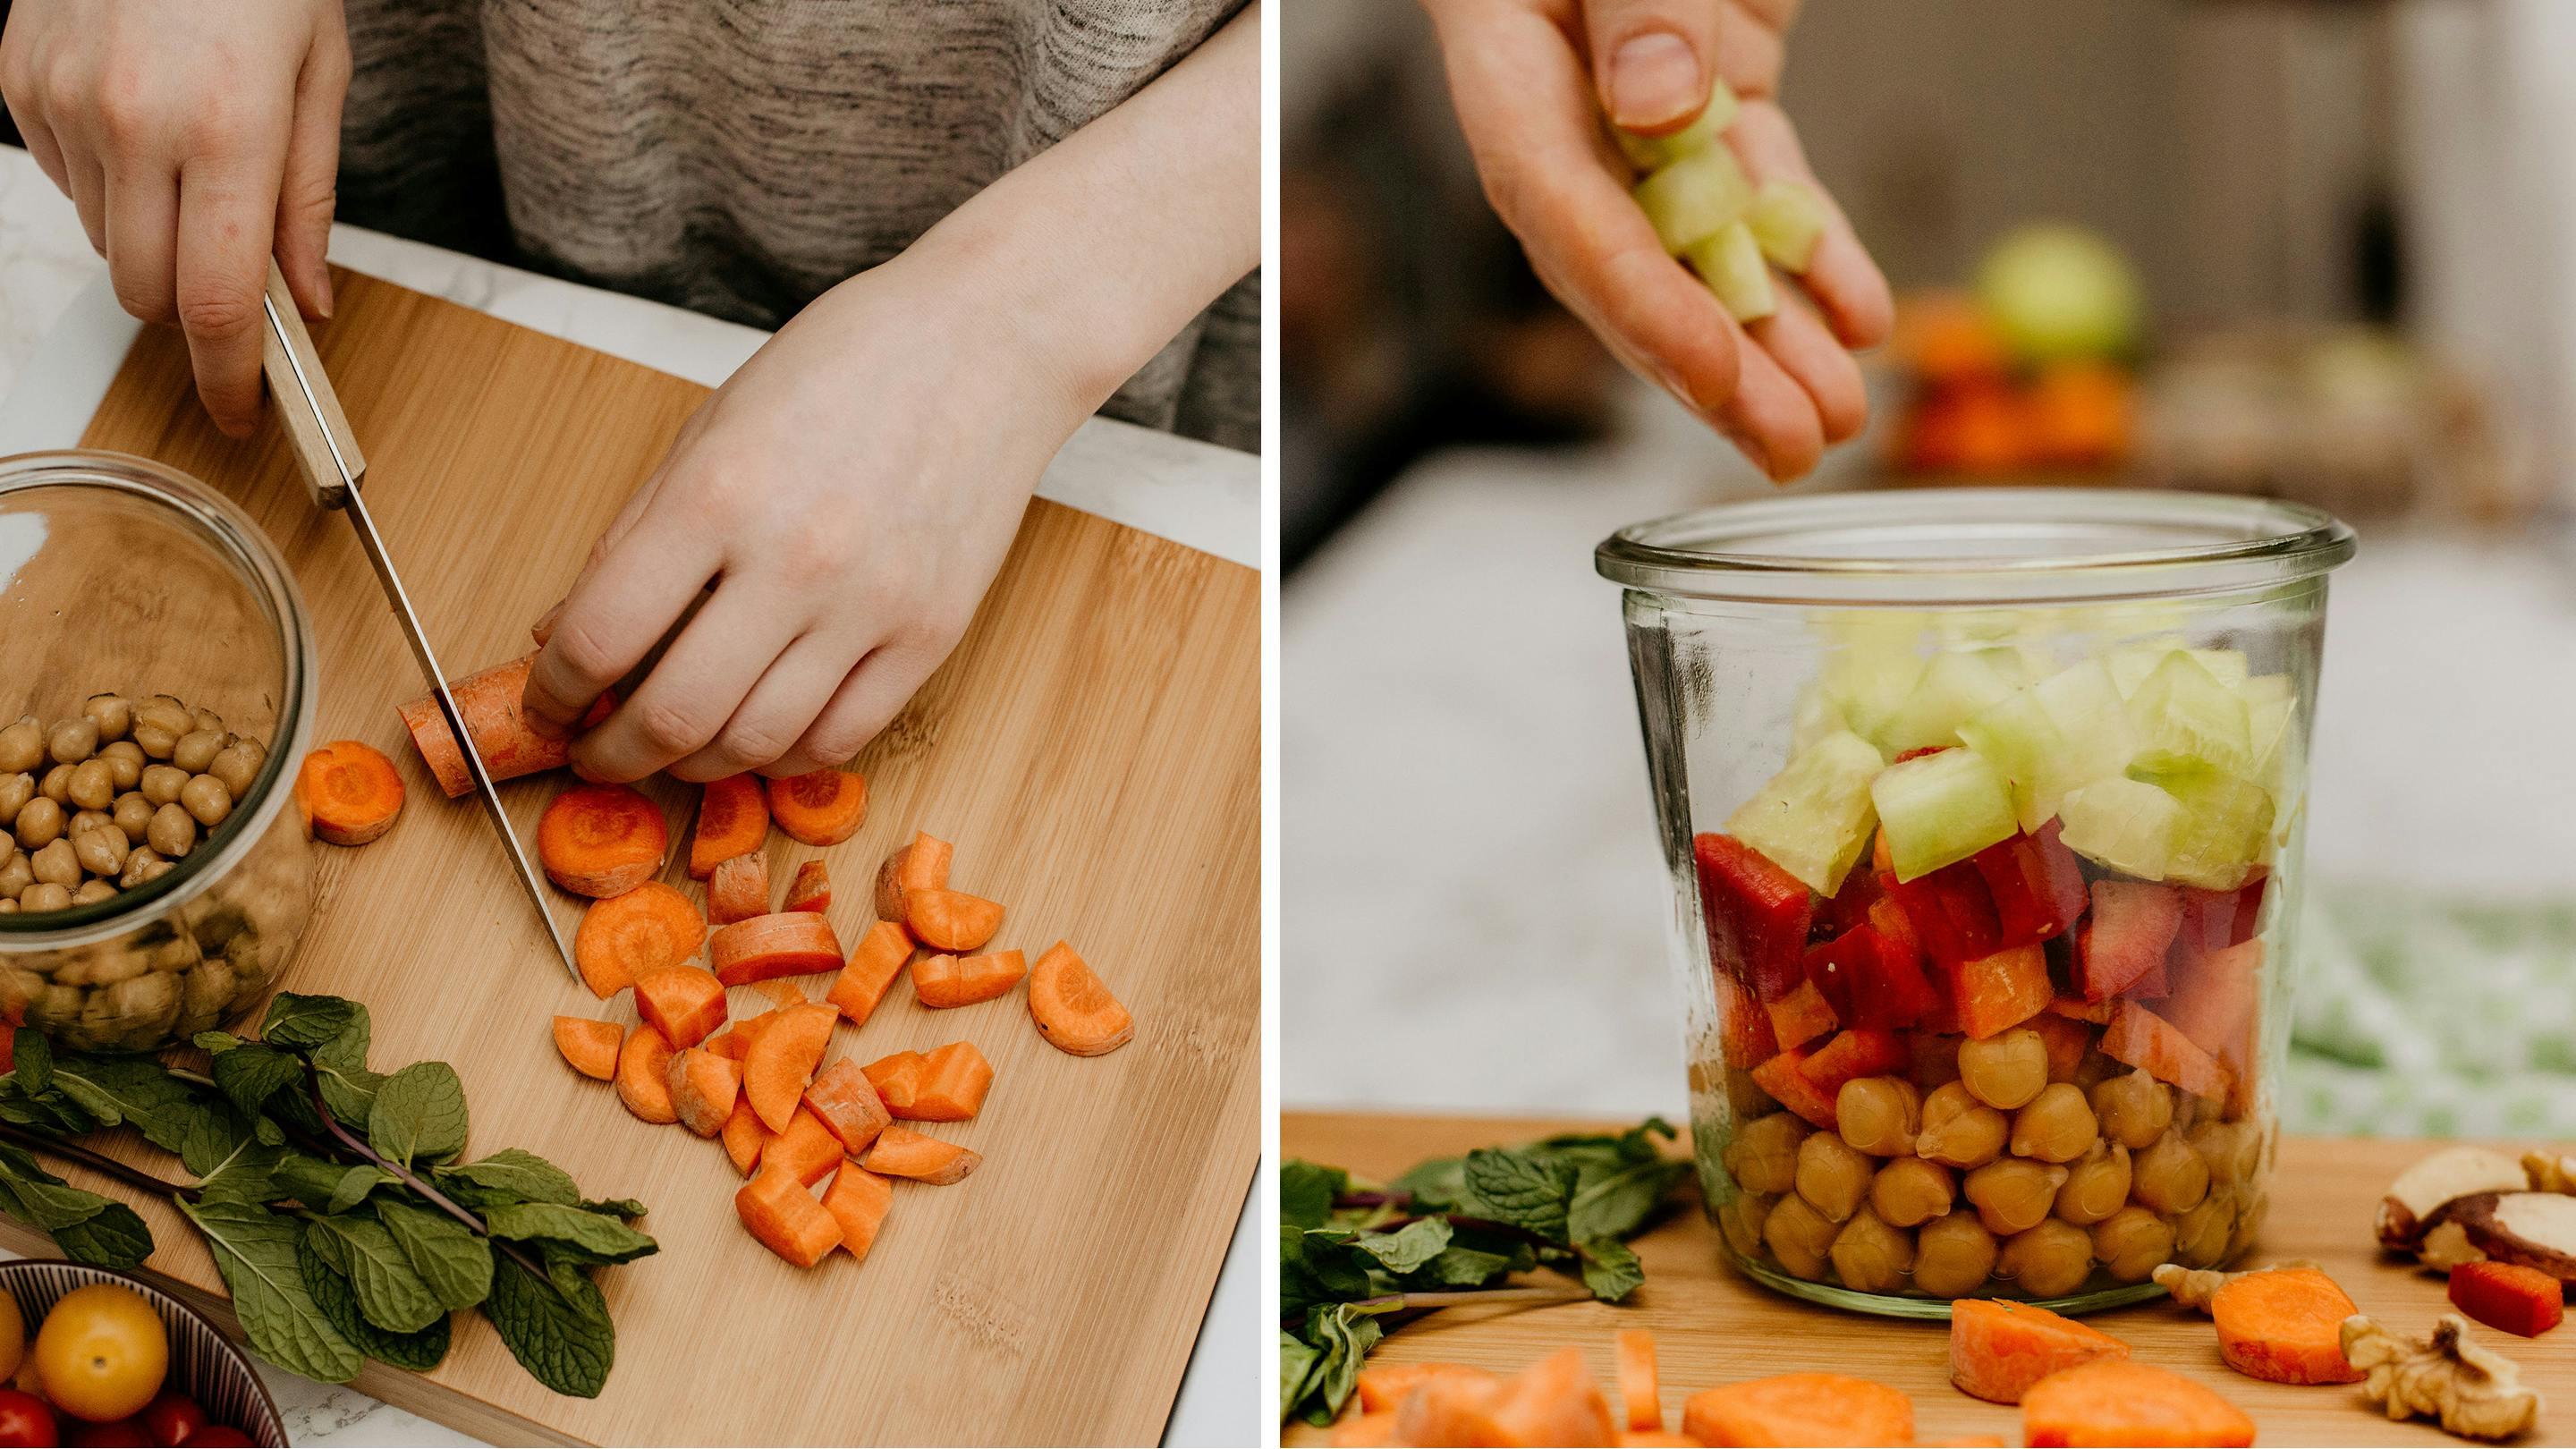 Karotte auf Arbeitsbrett und Glasbehälter mit Kircherebsen, frischem Gemüse in Stücken (Marke: Butlers).